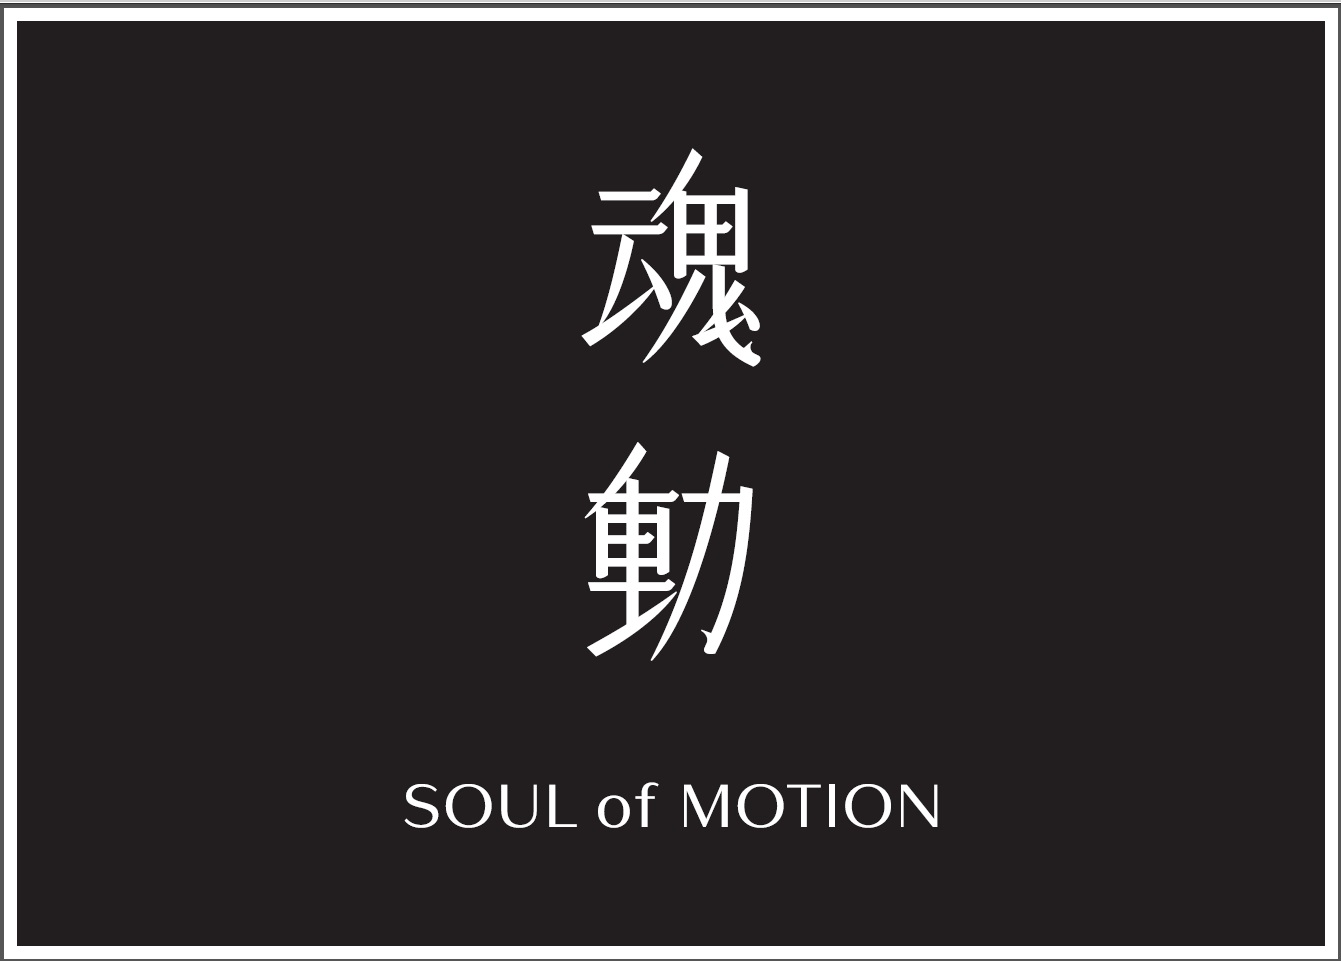 魂動」を表現したフレグランス「SOUL of MOTION」を発売します ...